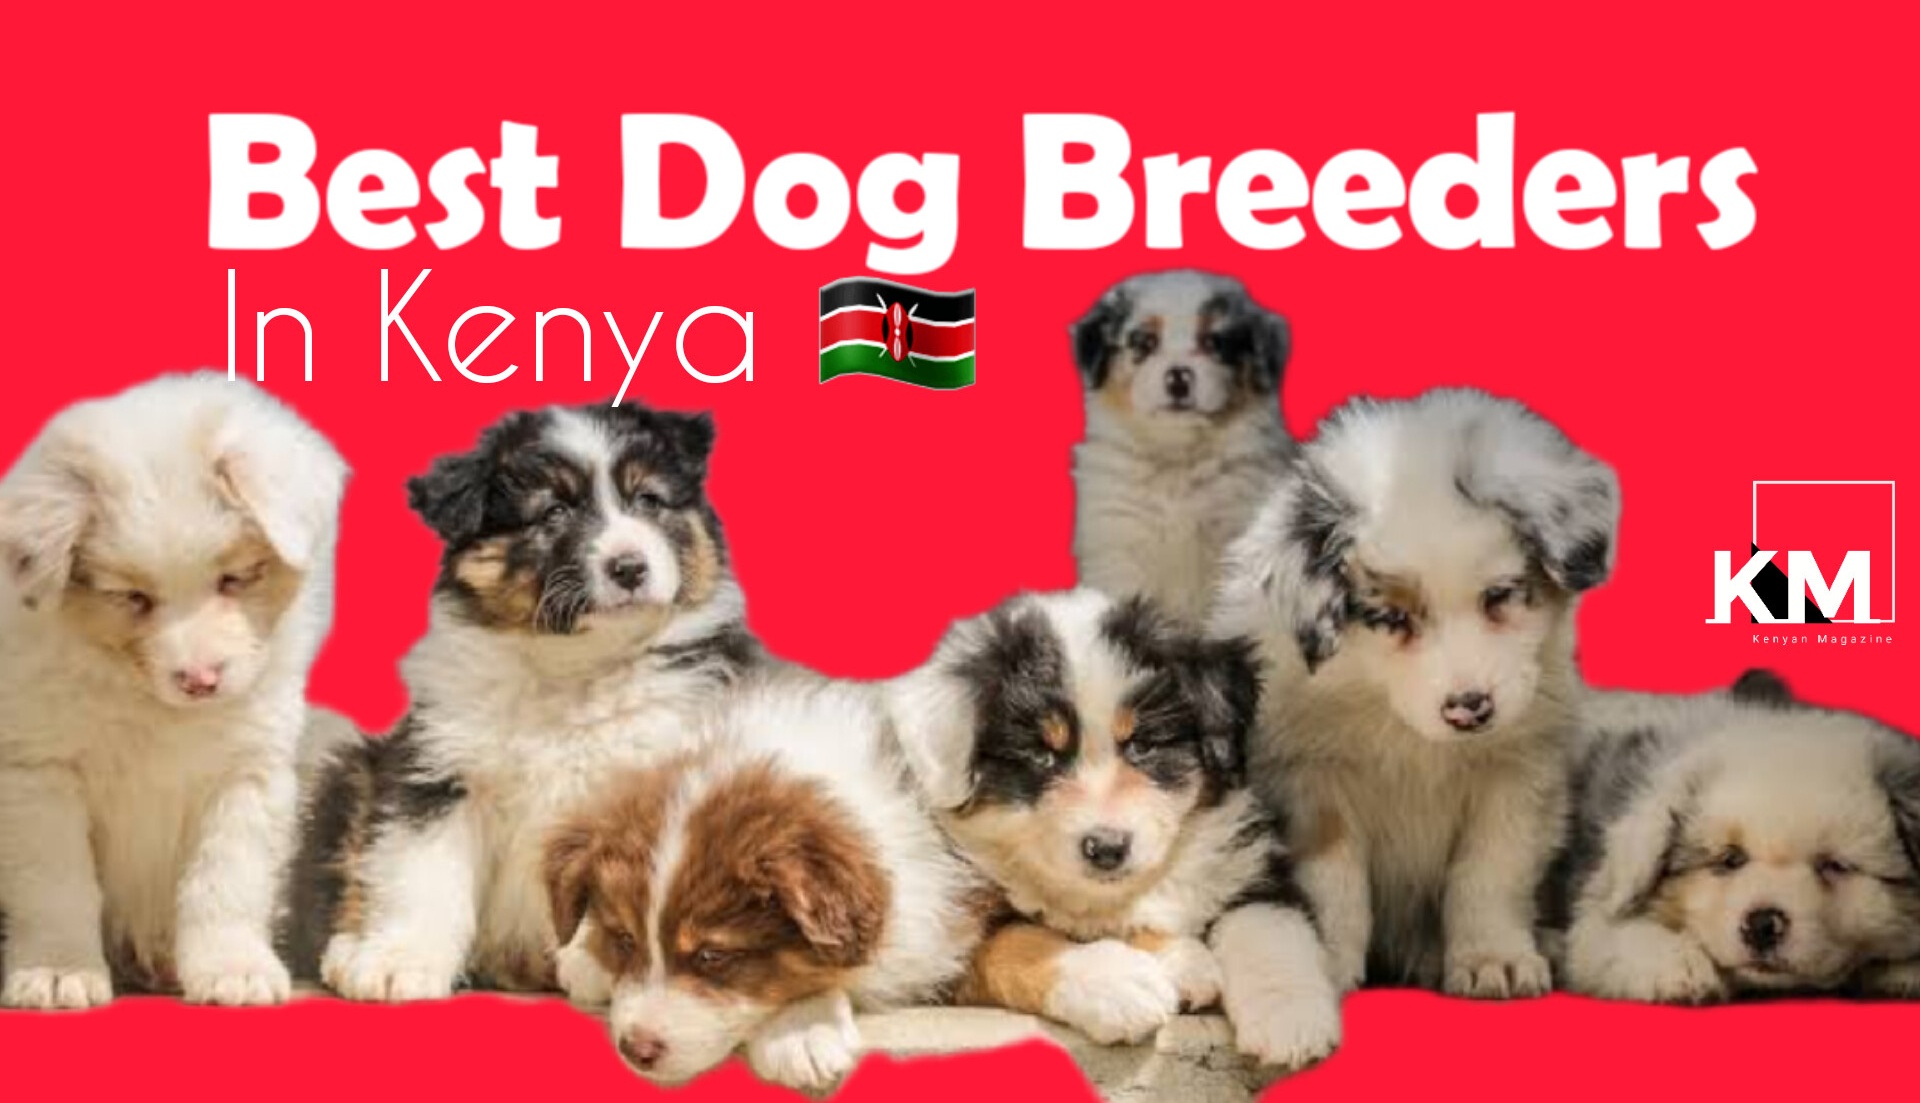 Best Dog Breeders in Kenya